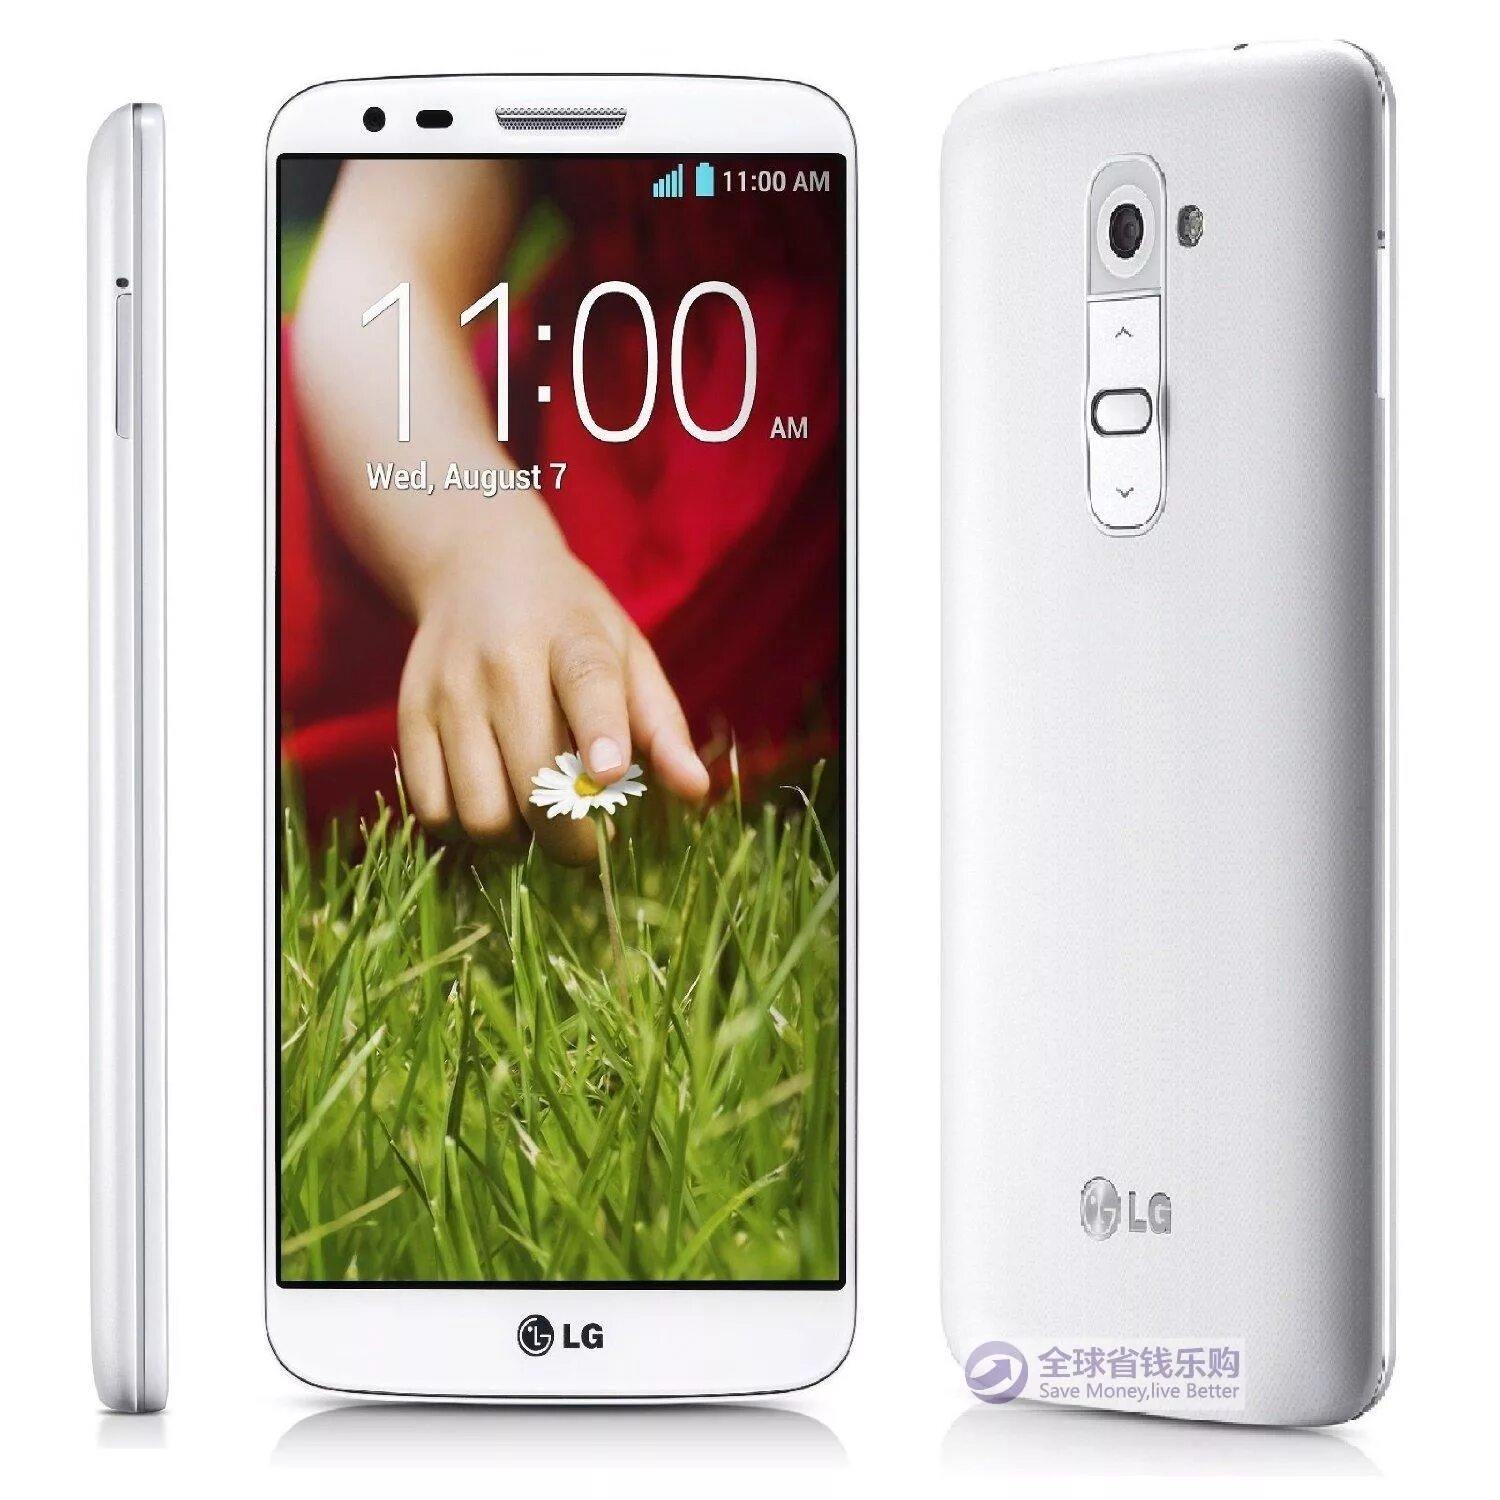 LG g2. LG g2 Mini. LG d802. LG g2 d802 Gold. Lg телефон номер